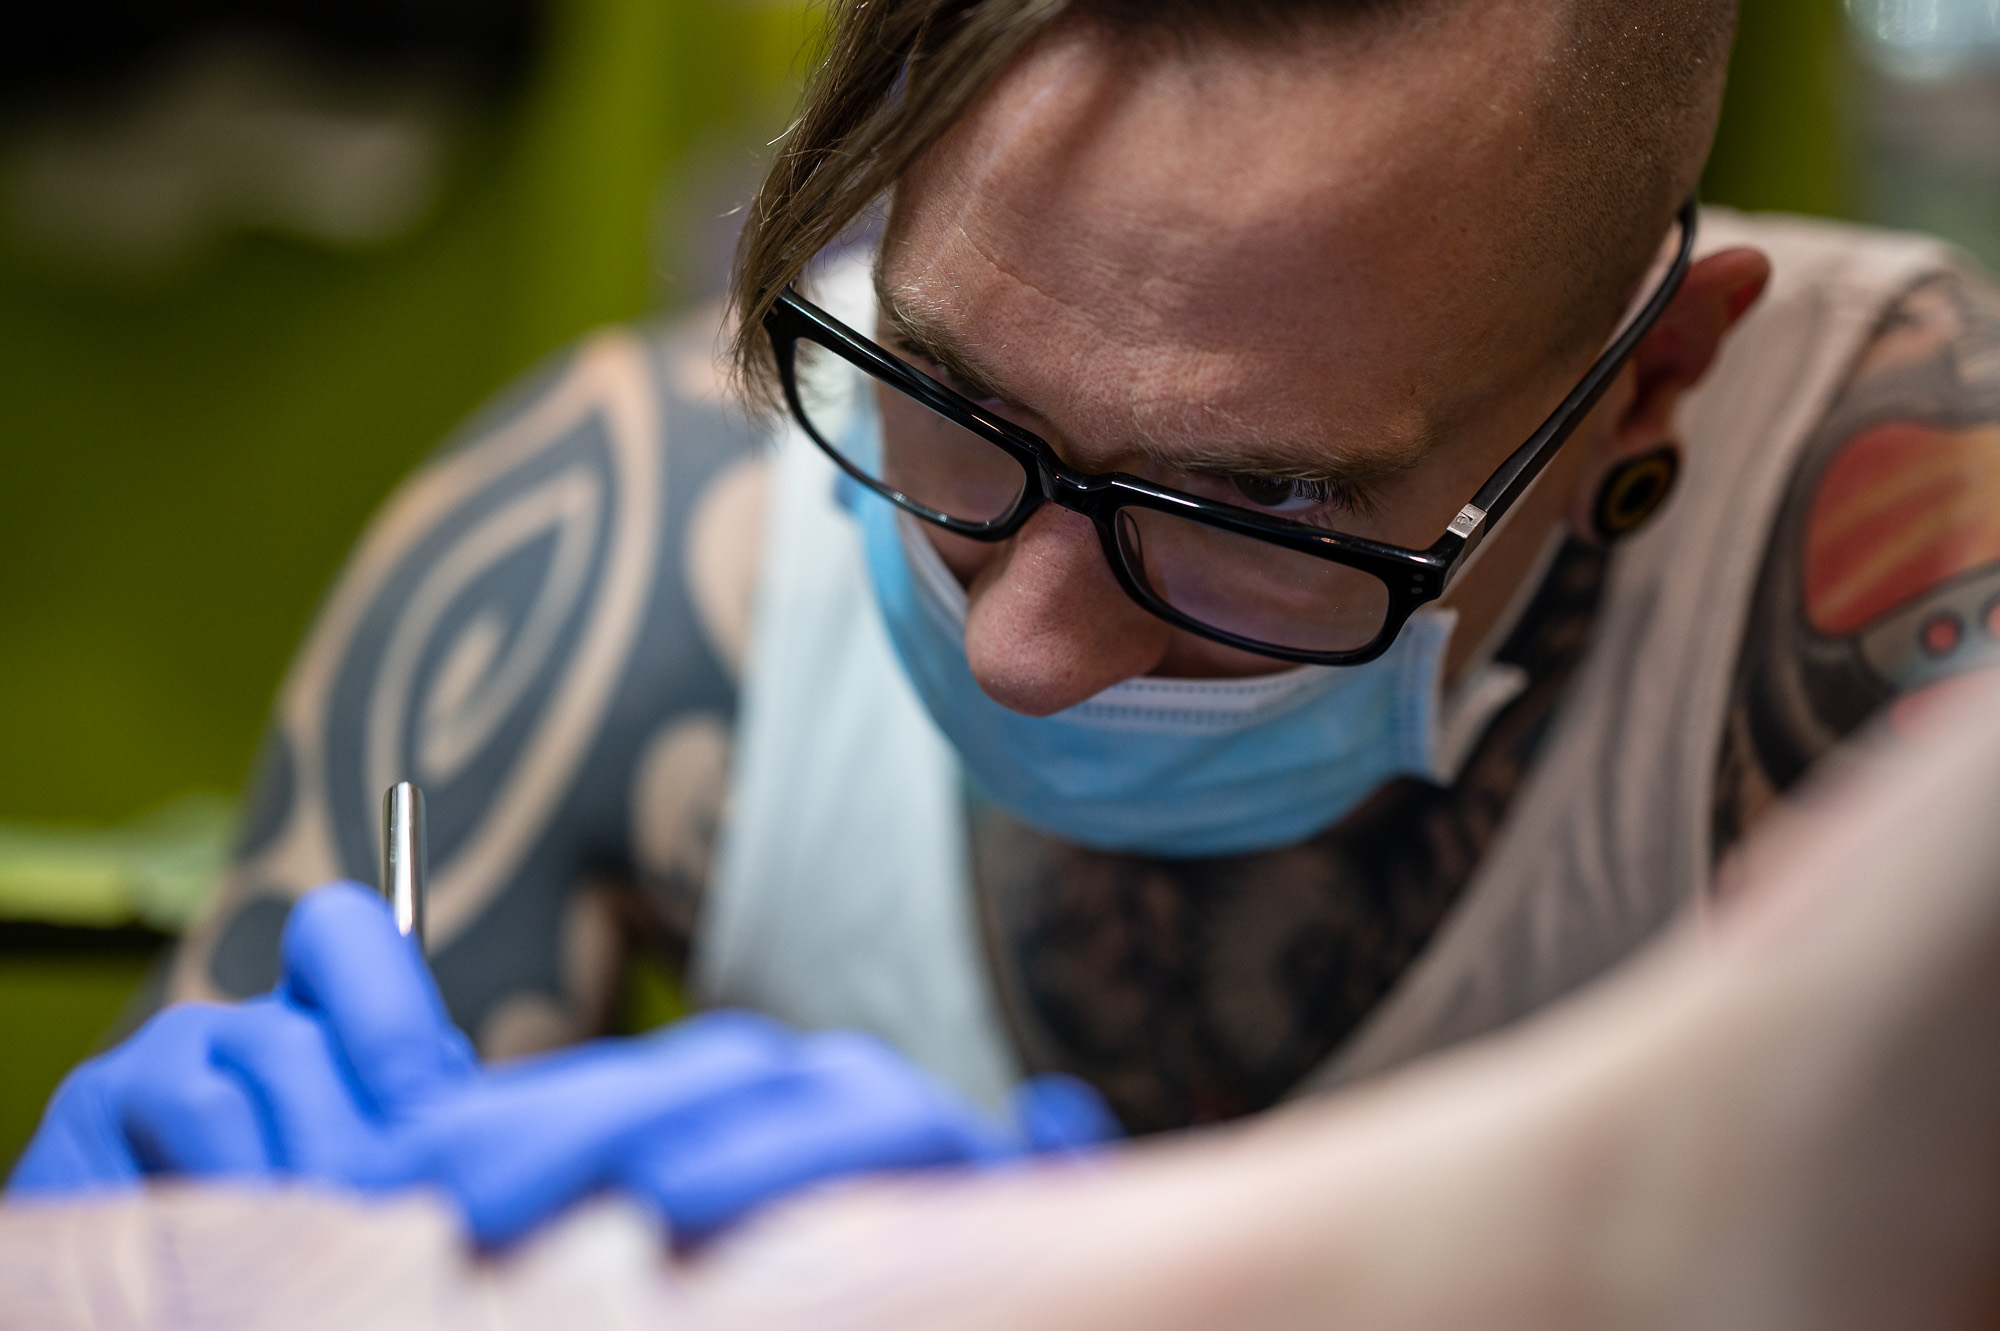 Zagyvai Gábor tetoválóművész hegtetoválás közben